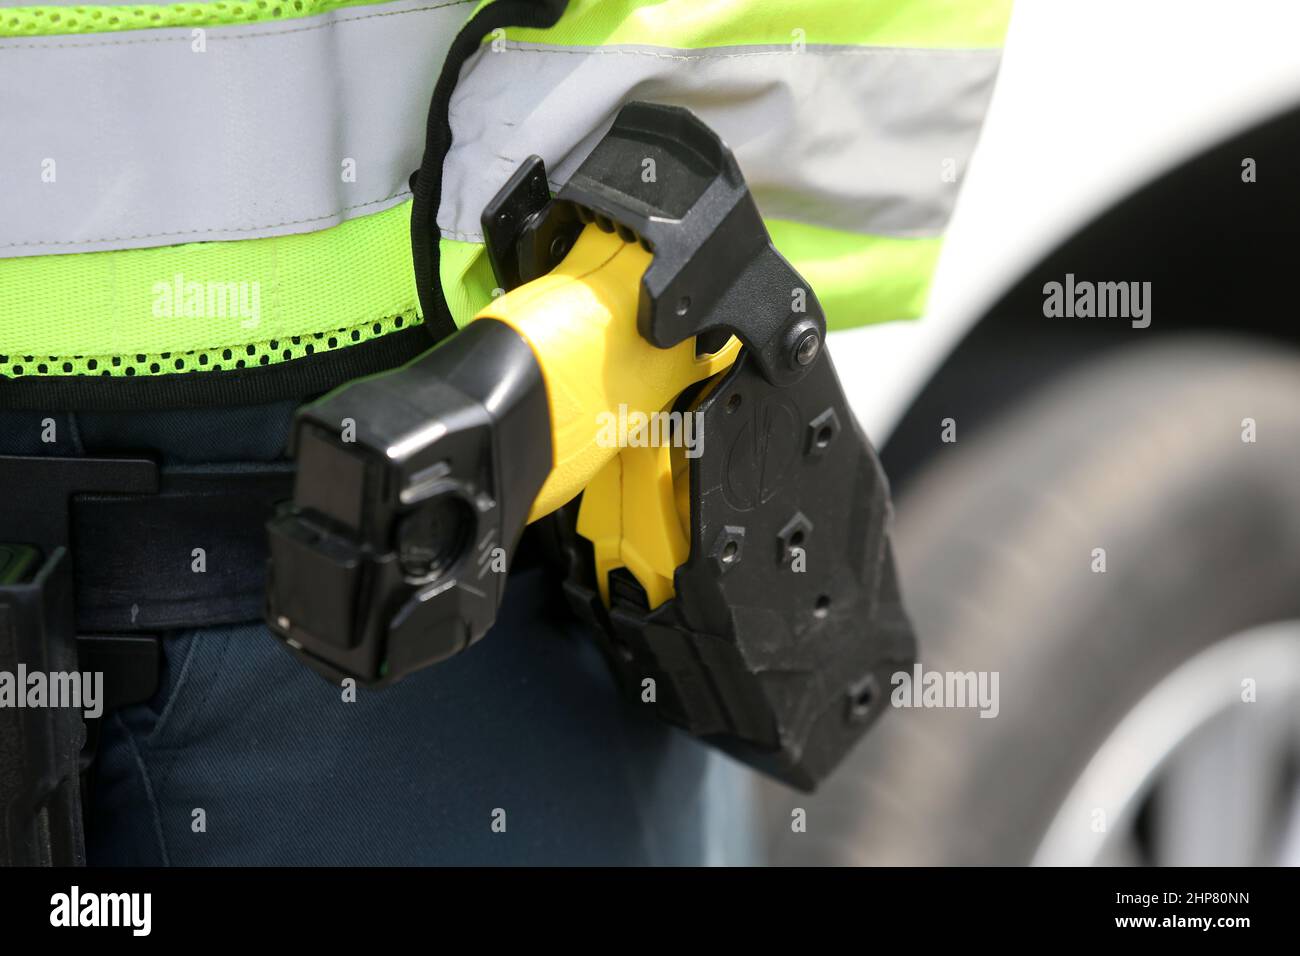 Dettaglio degli ufficiali di polizia lituani con pistola glock e scossa elettrica Foto Stock